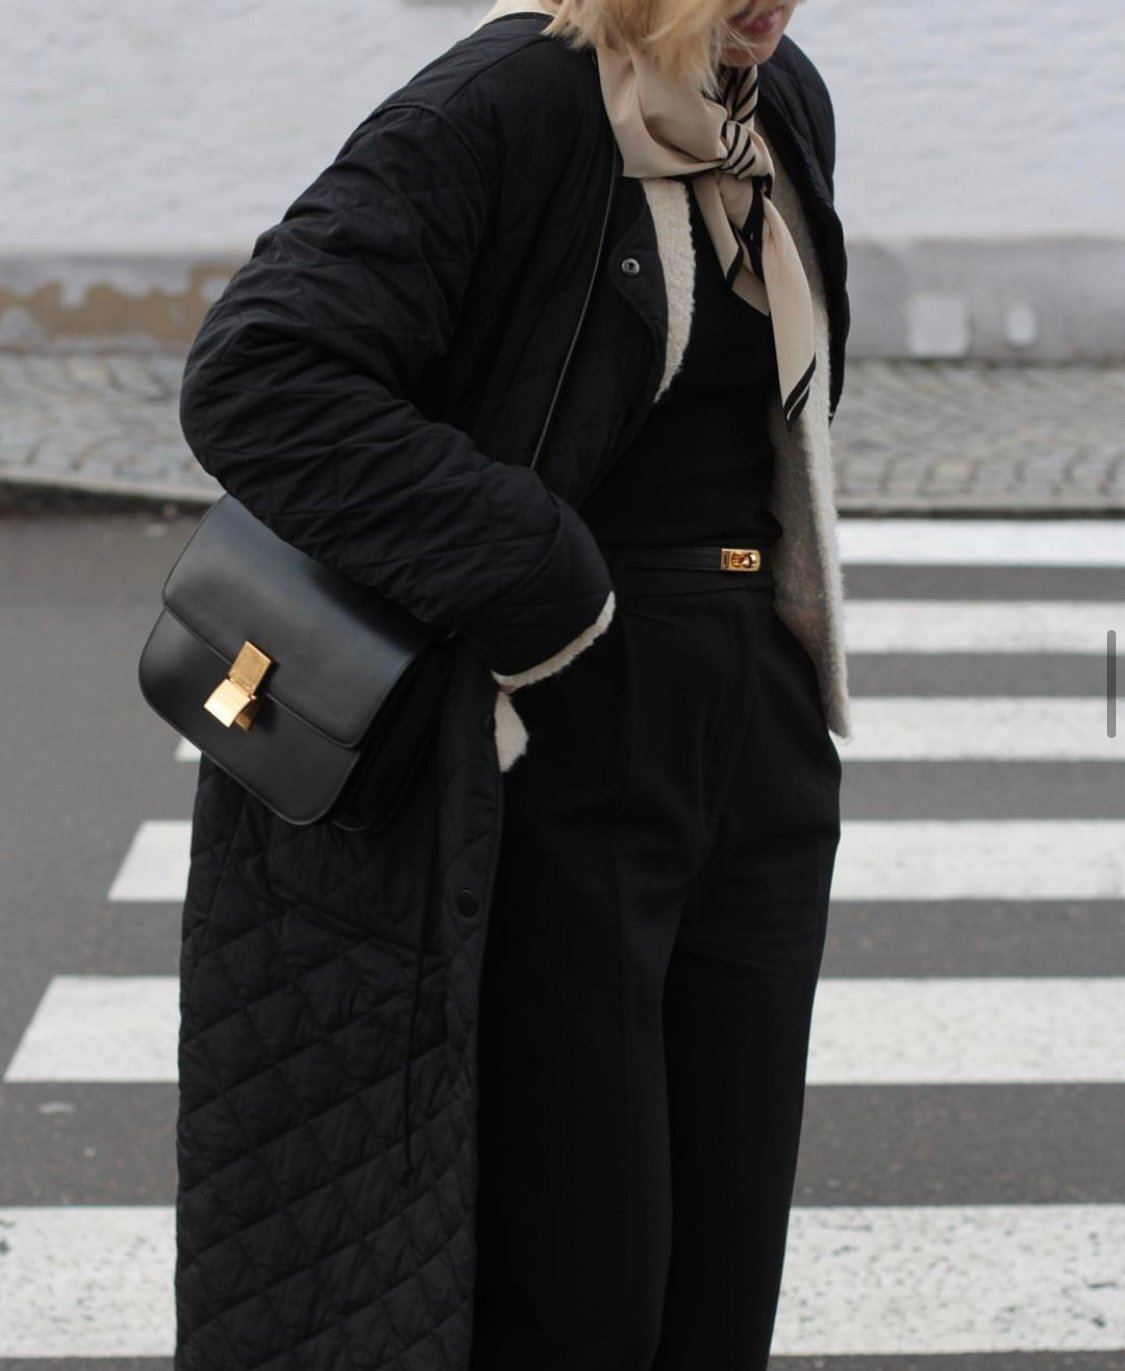 Celine Triomphe Shoulder Bag Black in Shiny Calfskin Leather with